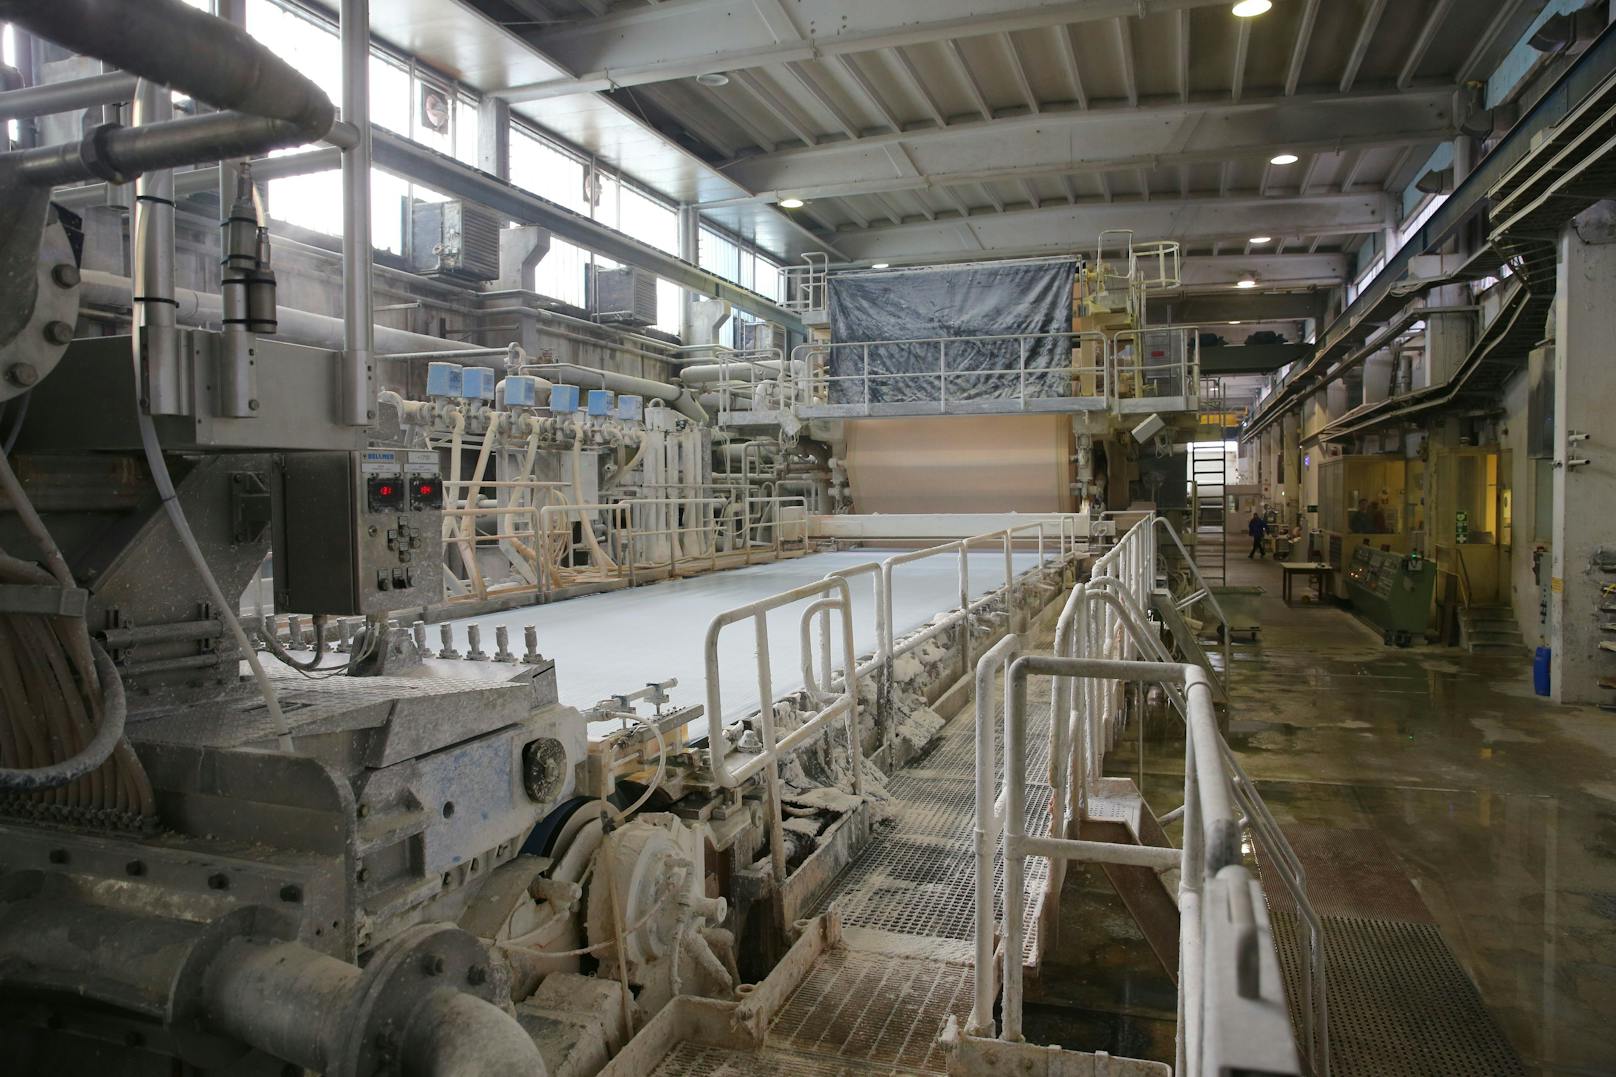 Blick in den steirischen Standort der Papierfabrik B&B, Brigl & Bergmeister, in Niklasdorf. Archivbilder 2015.